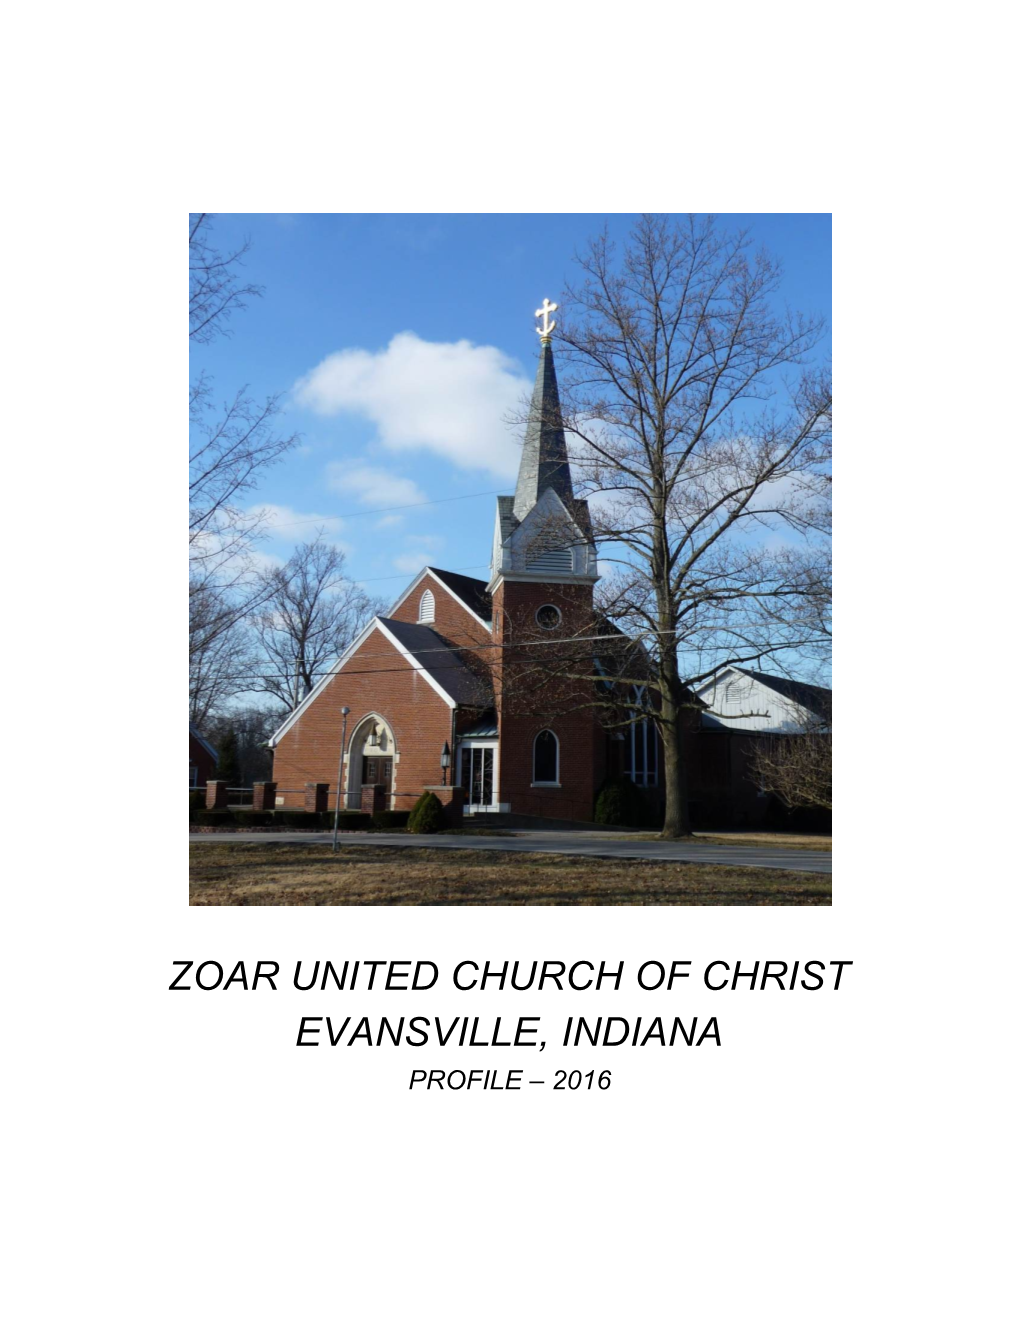 Zoar United Church of Christ